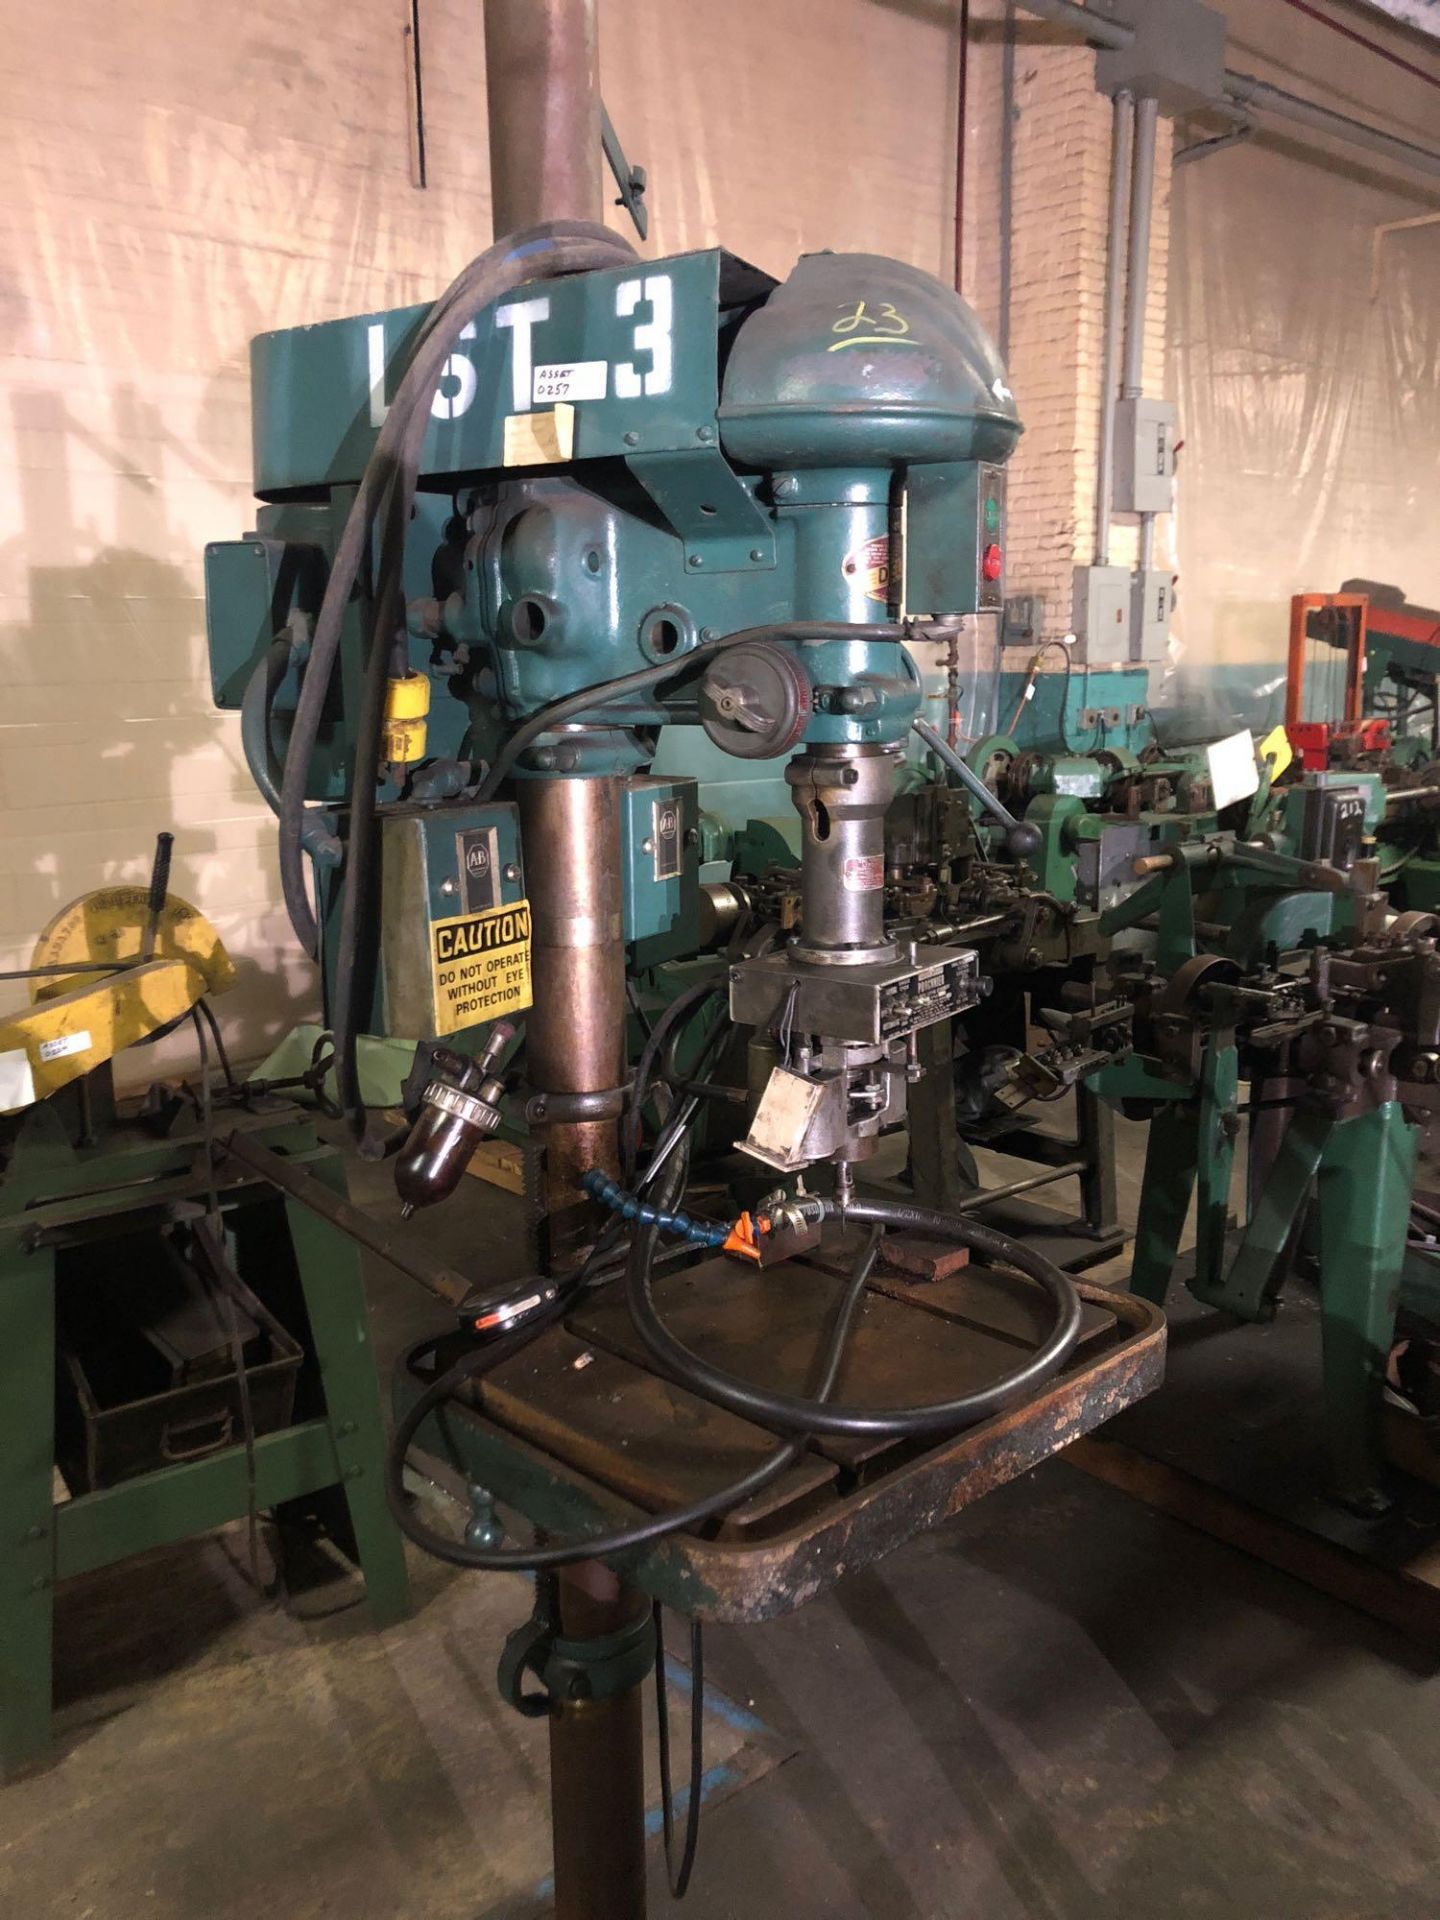 Delta Manufacturing Co Drill Press w/Procunier Attachment - Image 2 of 2